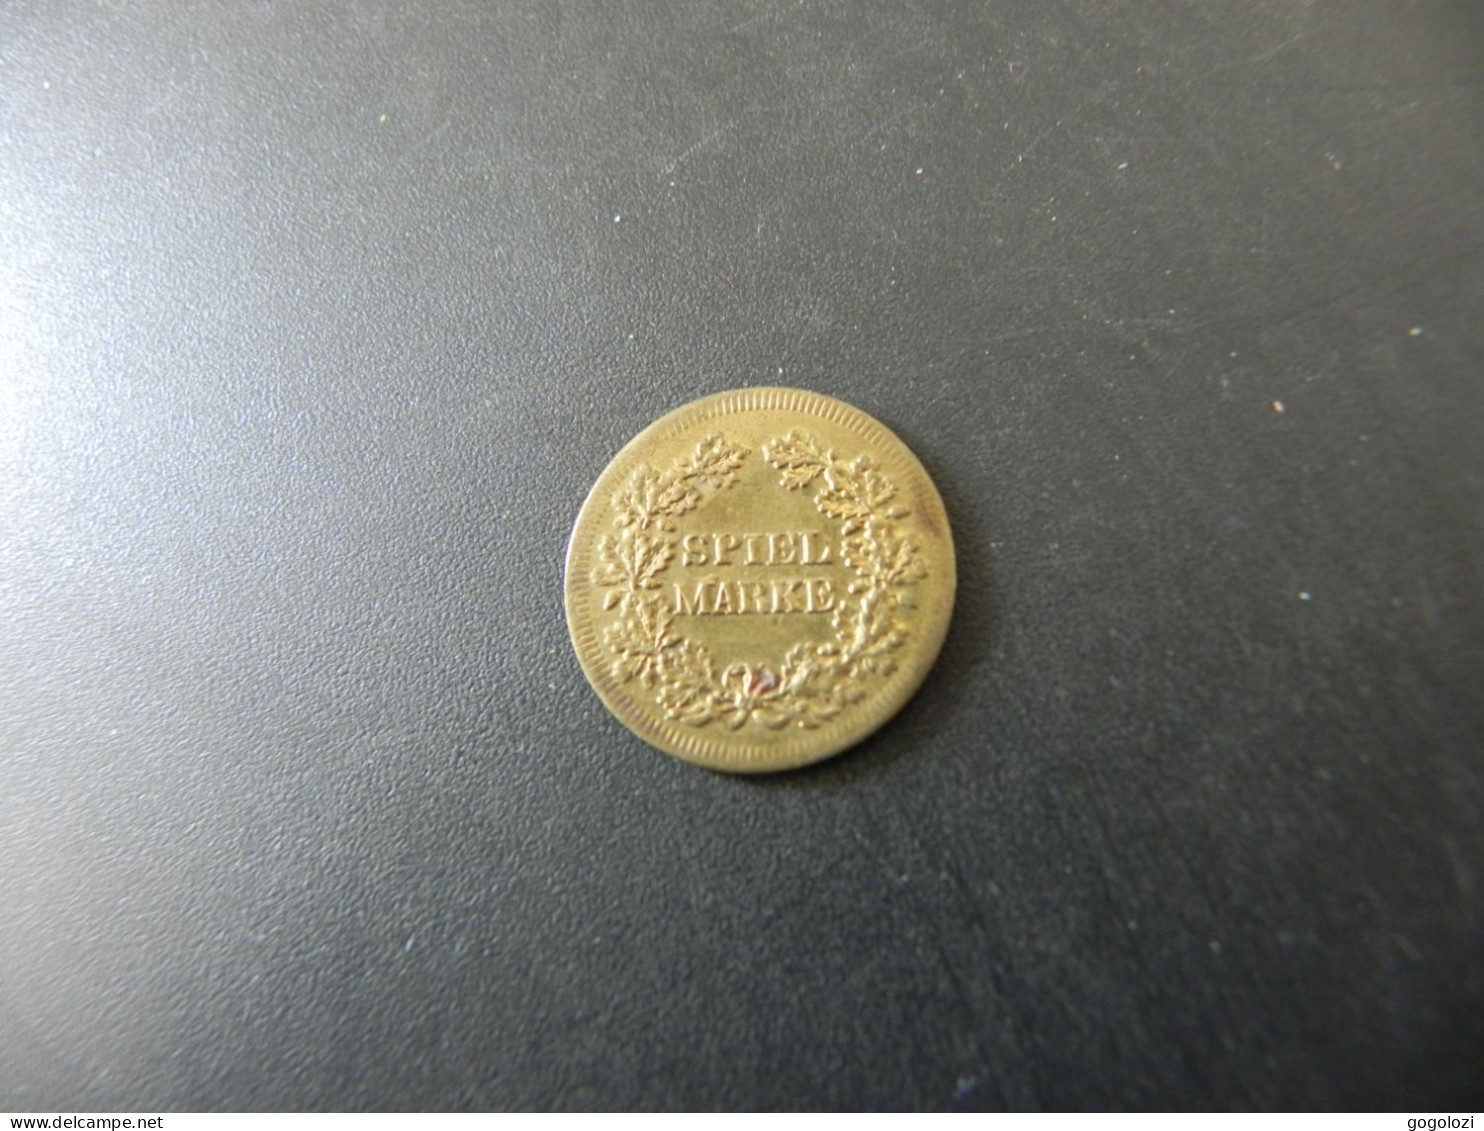 Jeton Token - Spielmarke - Liberty - Pièces écrasées (Elongated Coins)